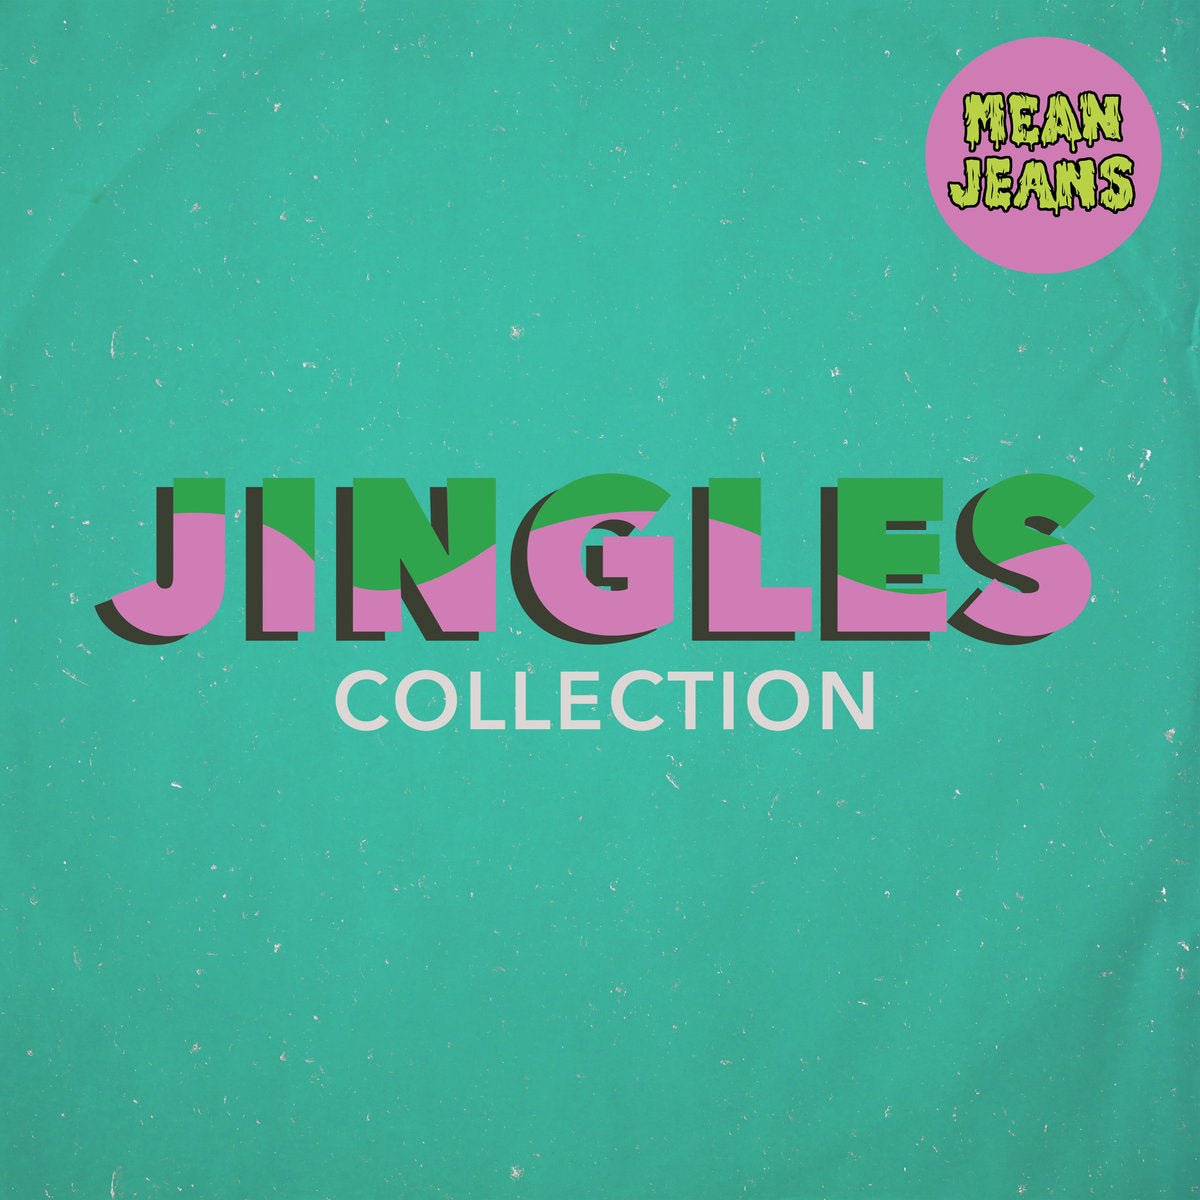 Mean Jeans - Jingles Collection LP - Vinyl - Fat Wreck